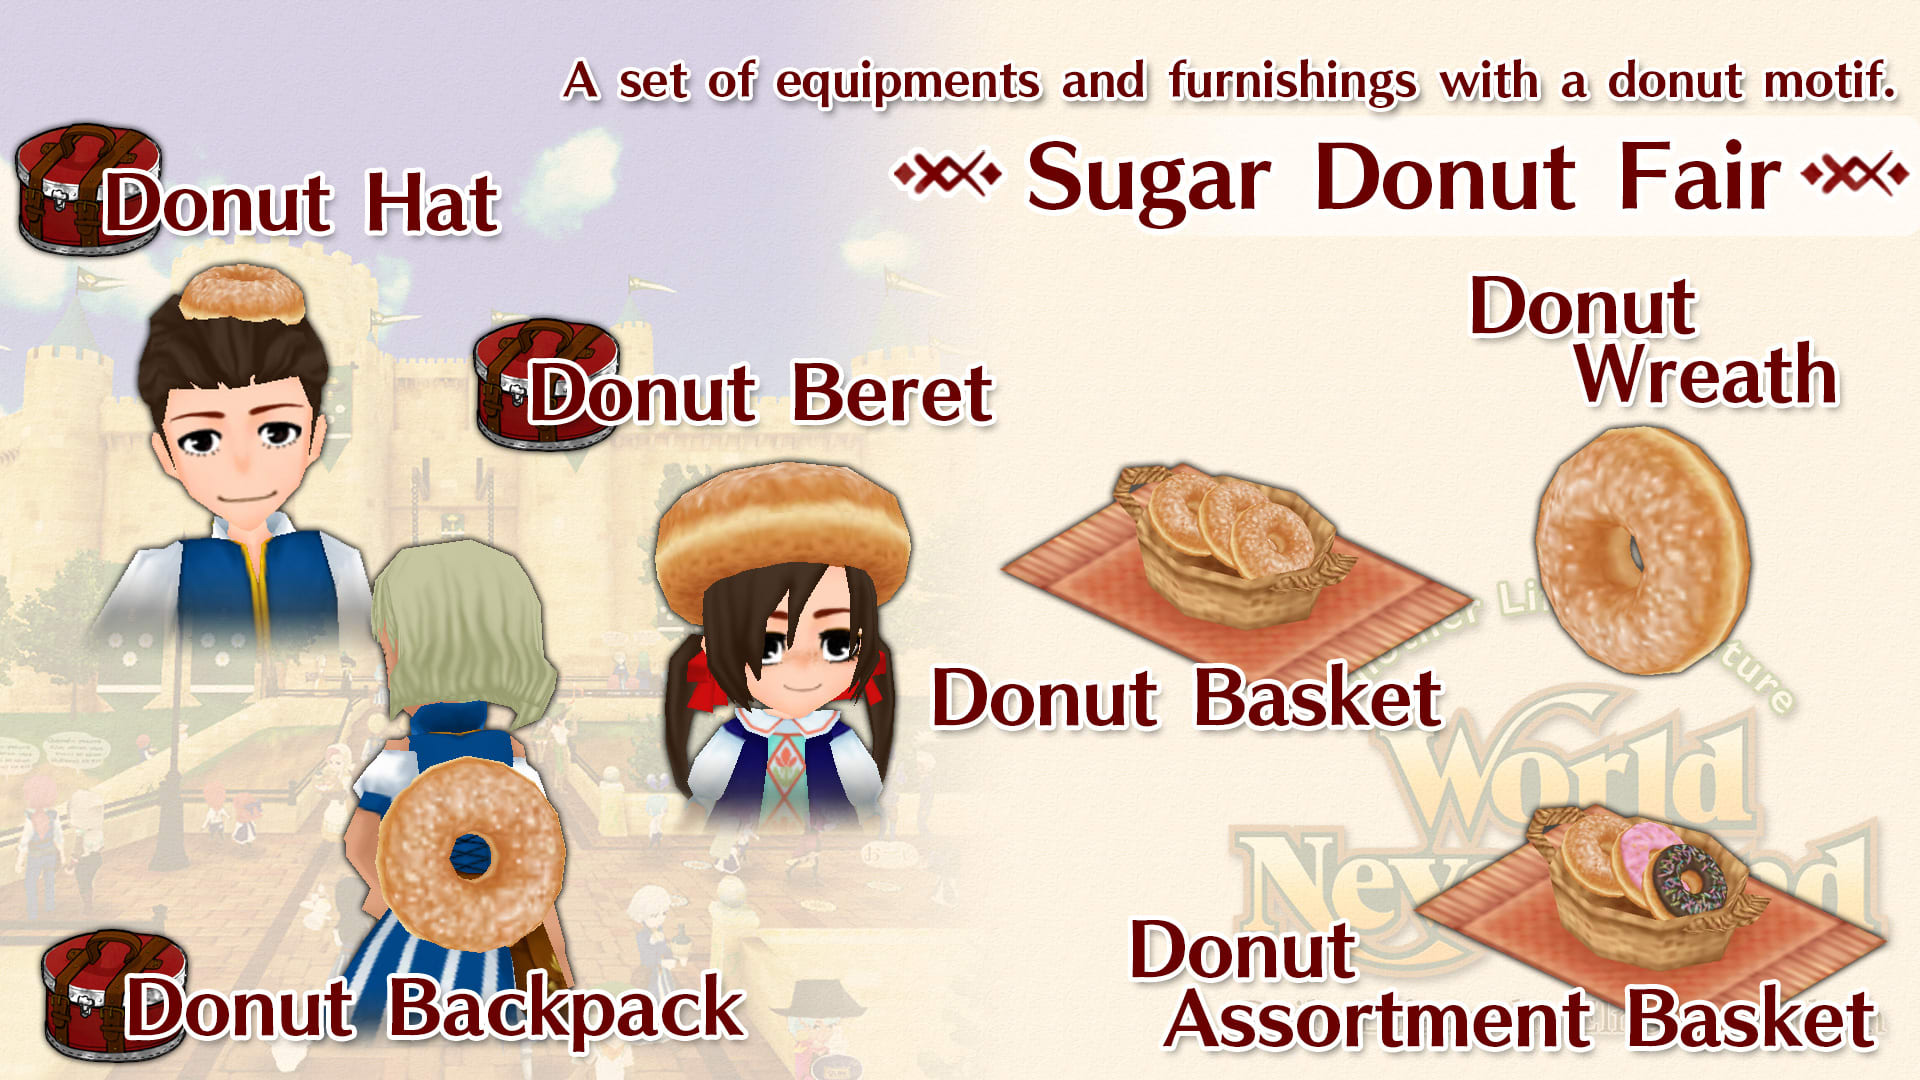 Sugar Donut Fair